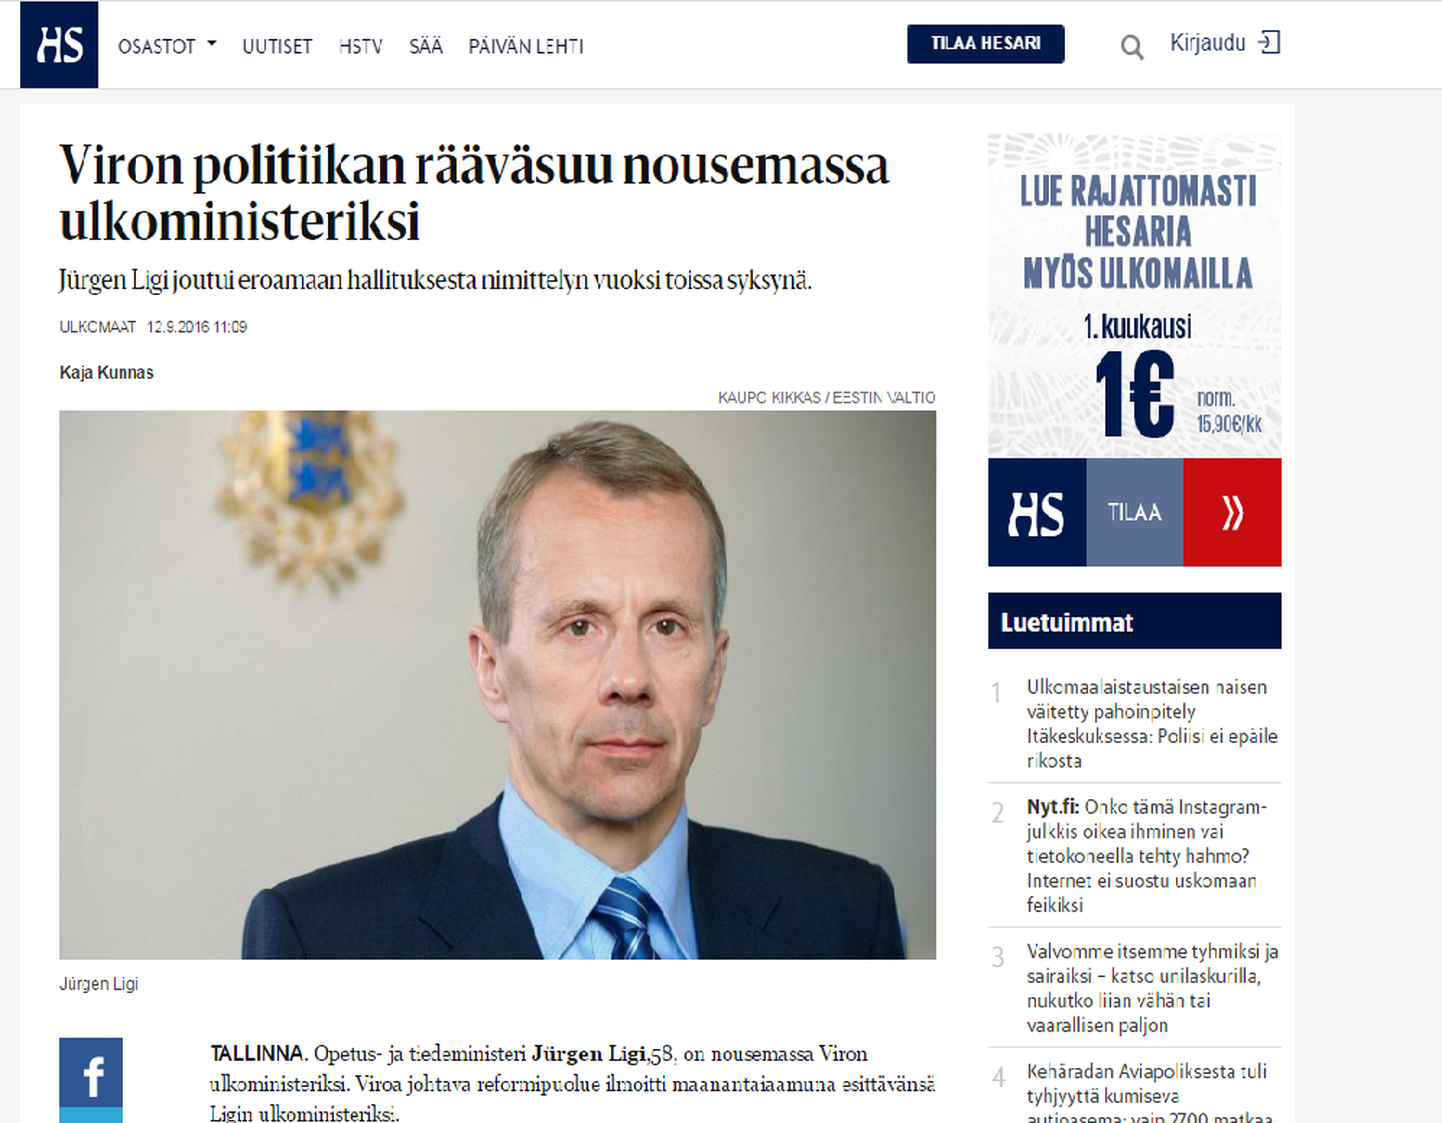 Soome päevalehes Helsingin Sanomat illmunud artikkel Jürgen Ligist.